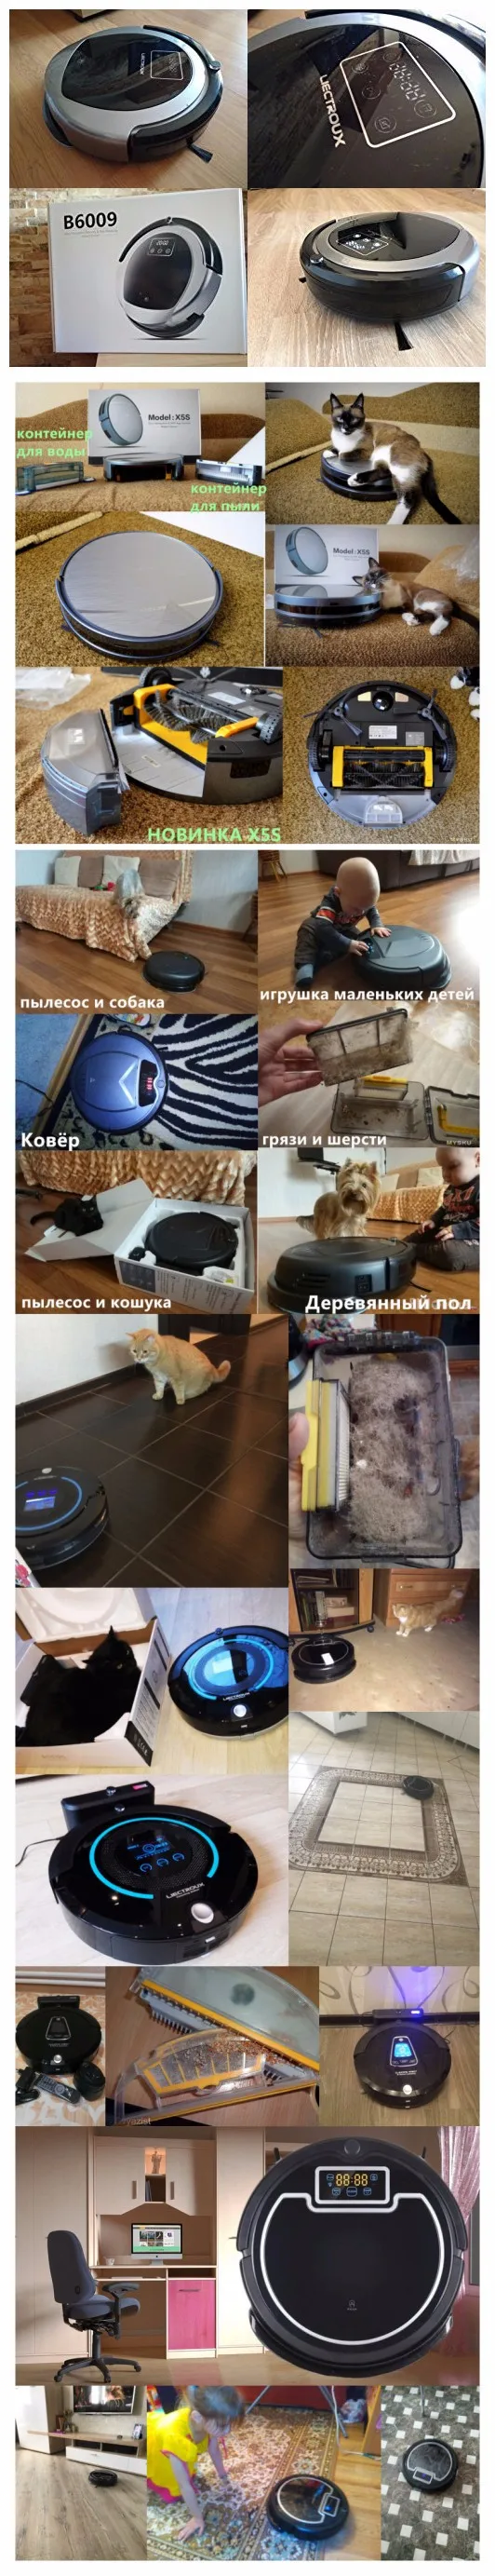 Из России) самый последний робот пылесос А338 с тряпокй, настройка времени уборки виртуальная стена, подметание, автоматическая подзарядка, УФ лампа,LCD экран, фильтр HEPA, робот пылеосс для дома,акция